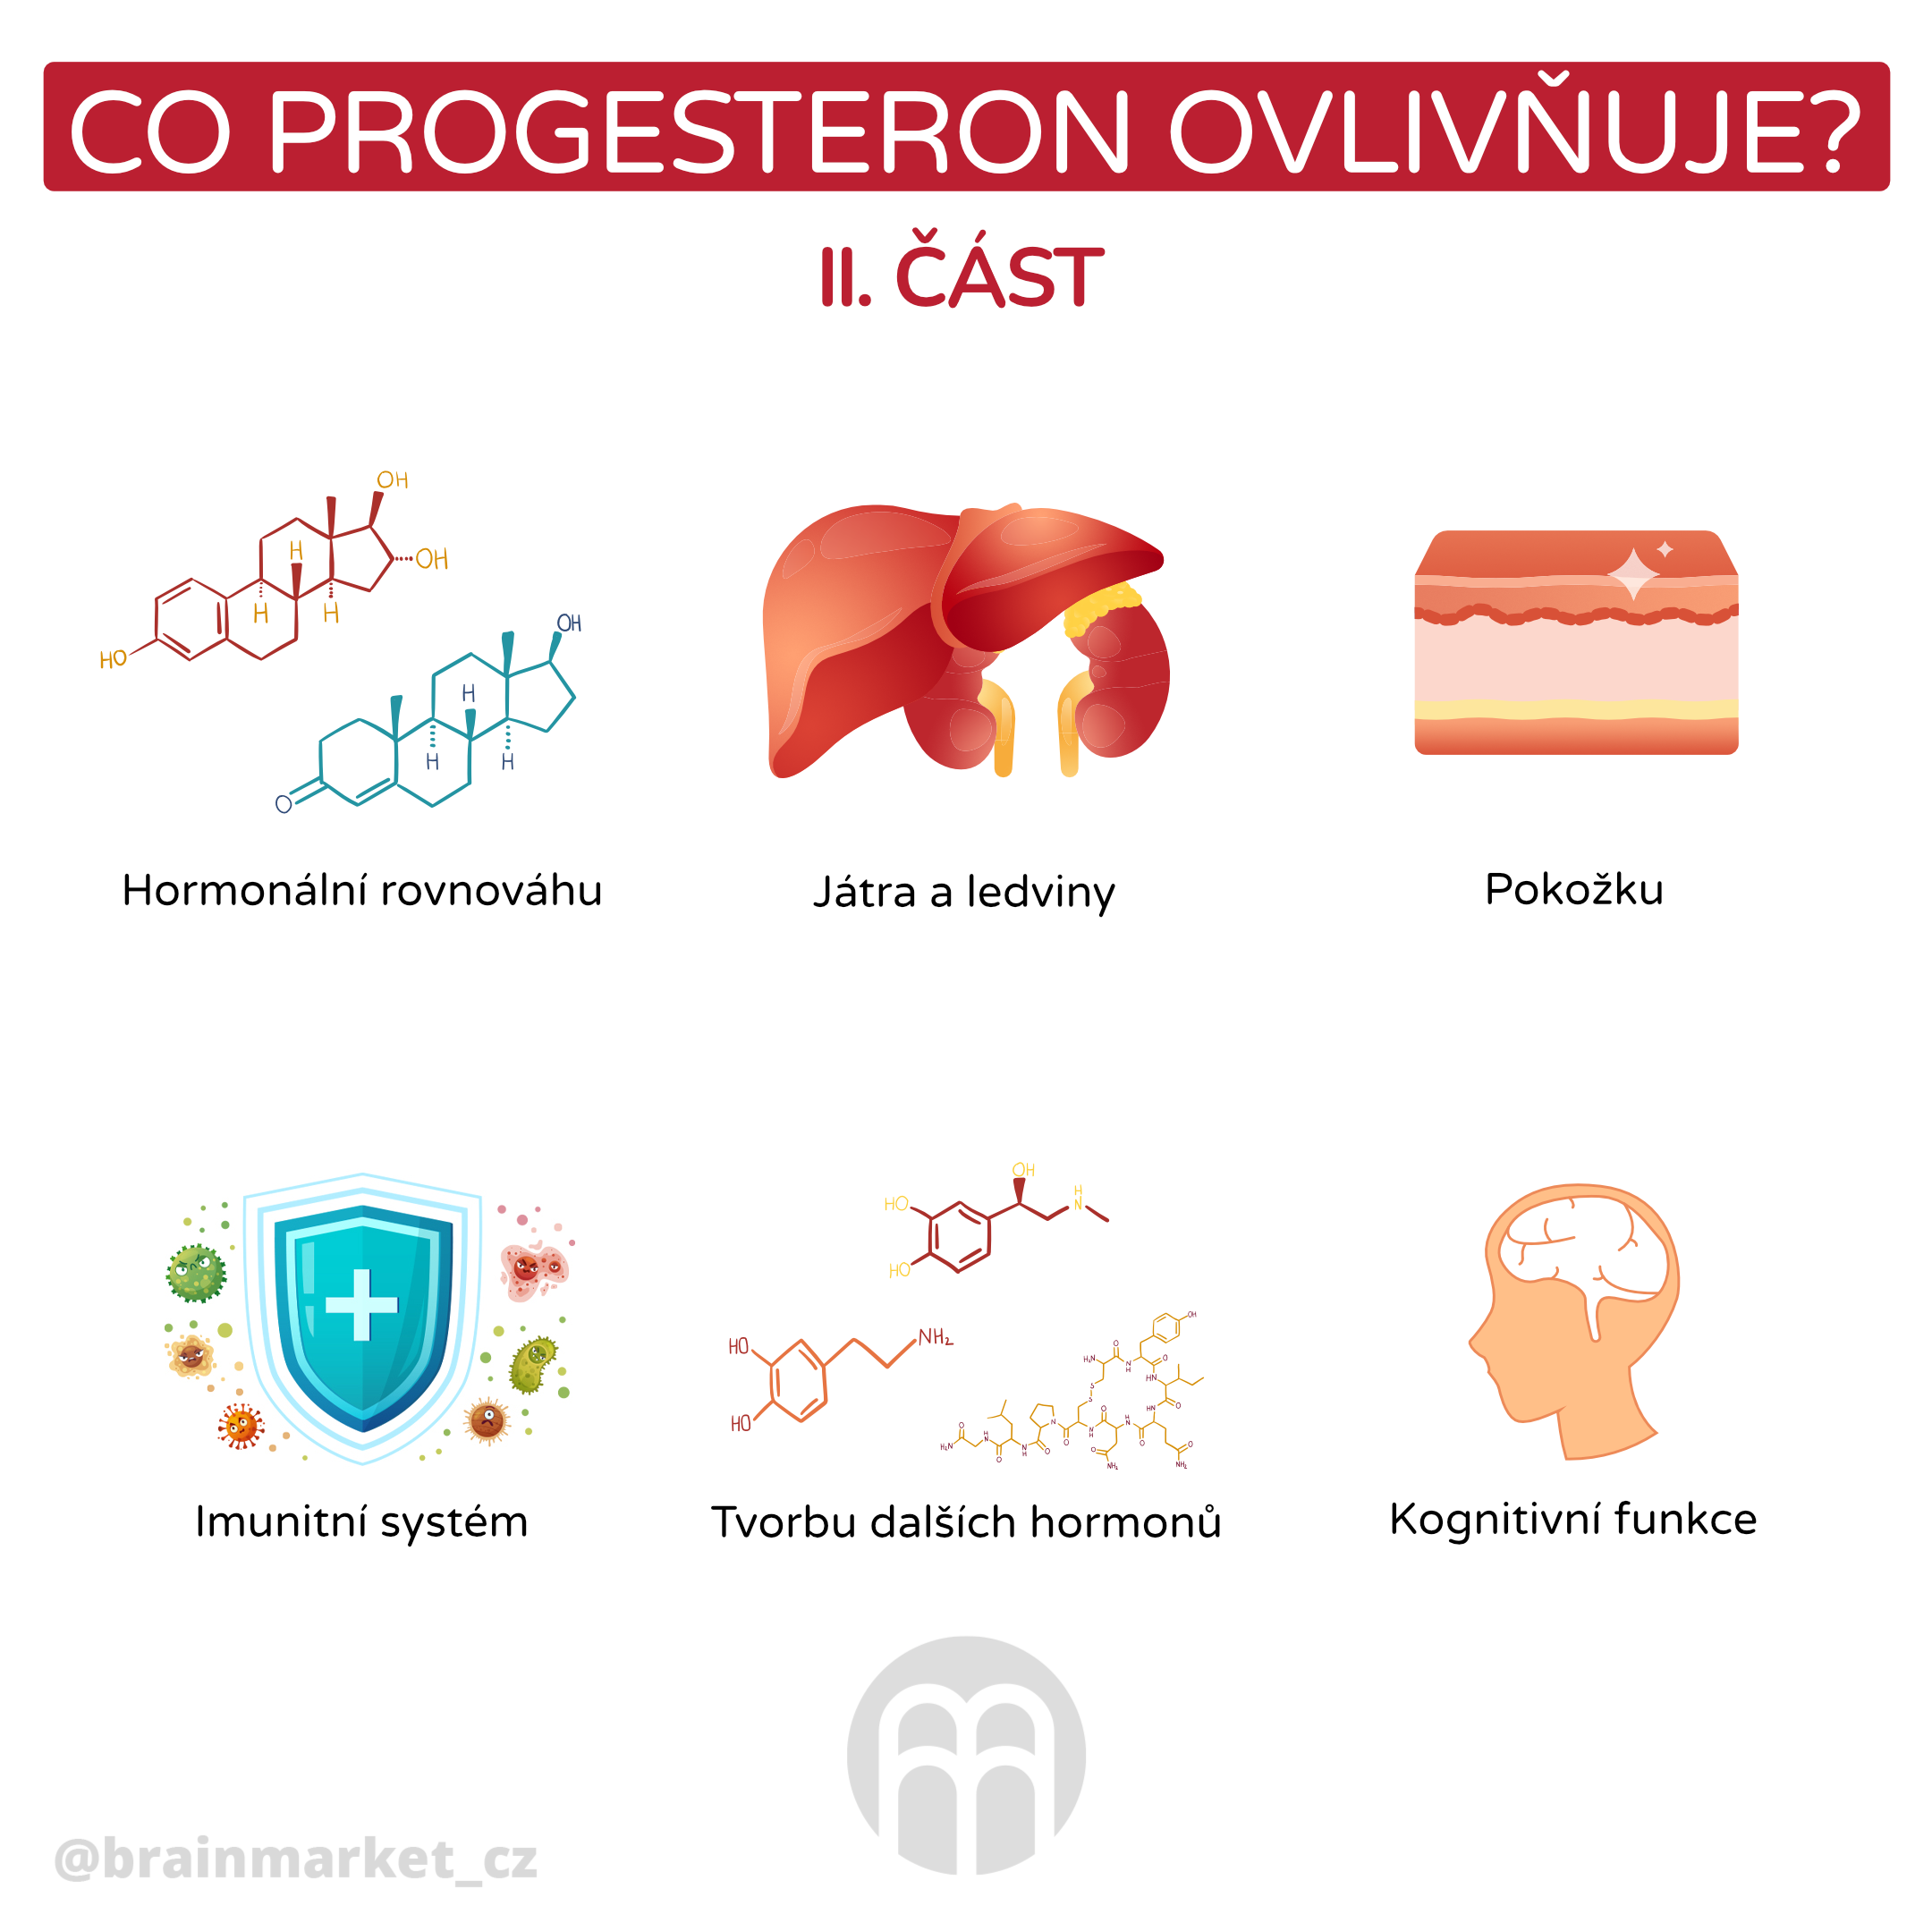 co progesteron ovlinnuje 2 _infografika_cz